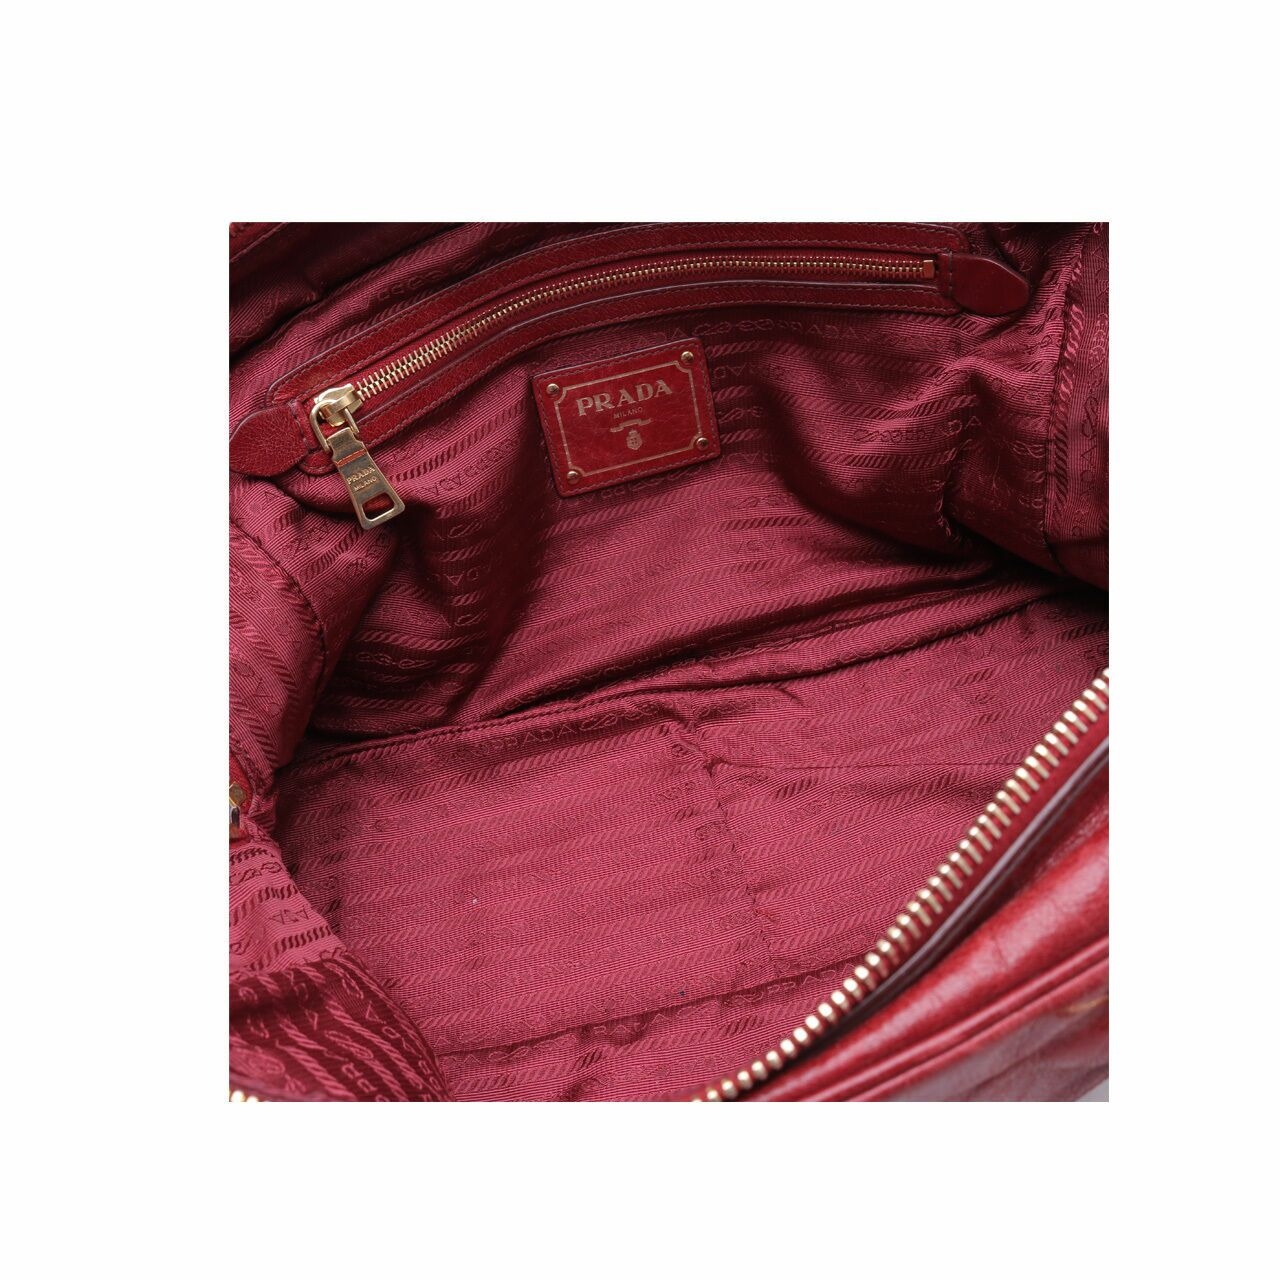 Prada Vitello Shine Rubino Bauletto Red Satchel Bag